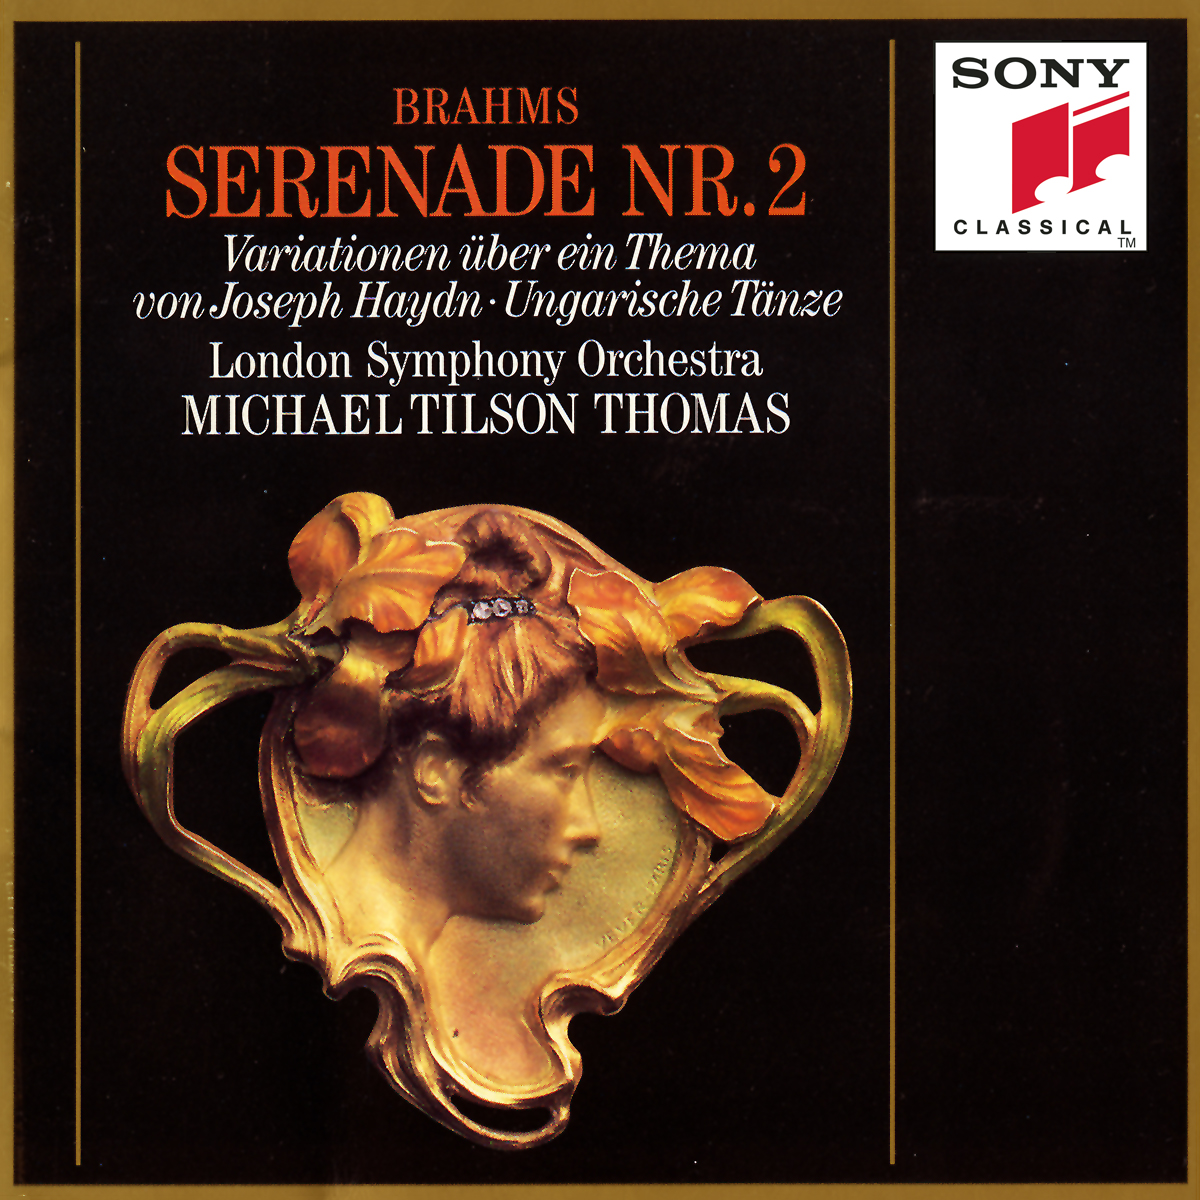 Serenade No. 2 in A Major, Op. 16 for Small Orchestra:IV. Quasi Menuetto, Trio